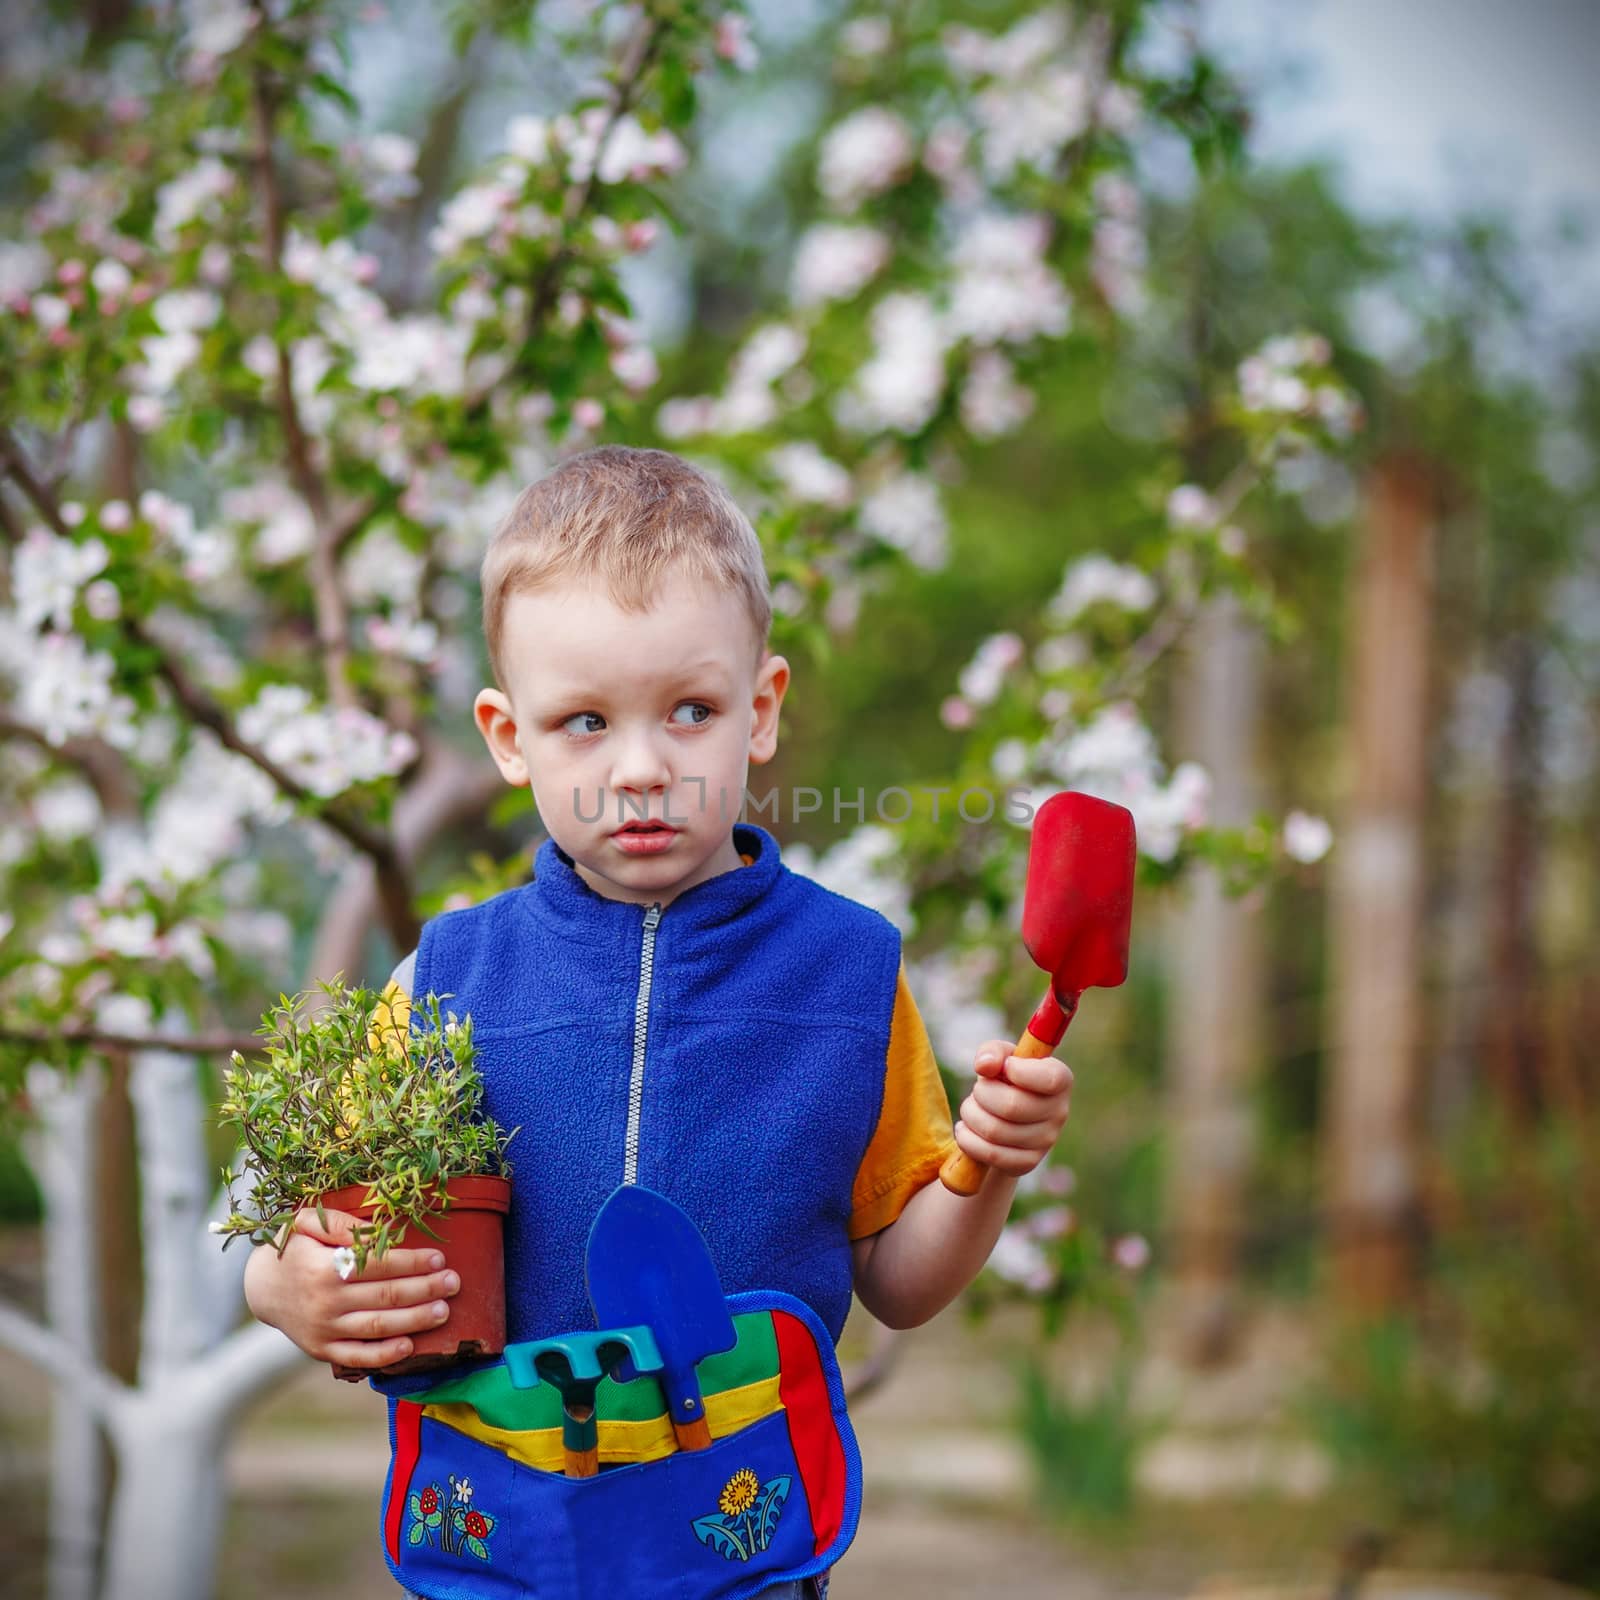 Handsome little blond boy planting and gardening flowers in gard by natazhekova